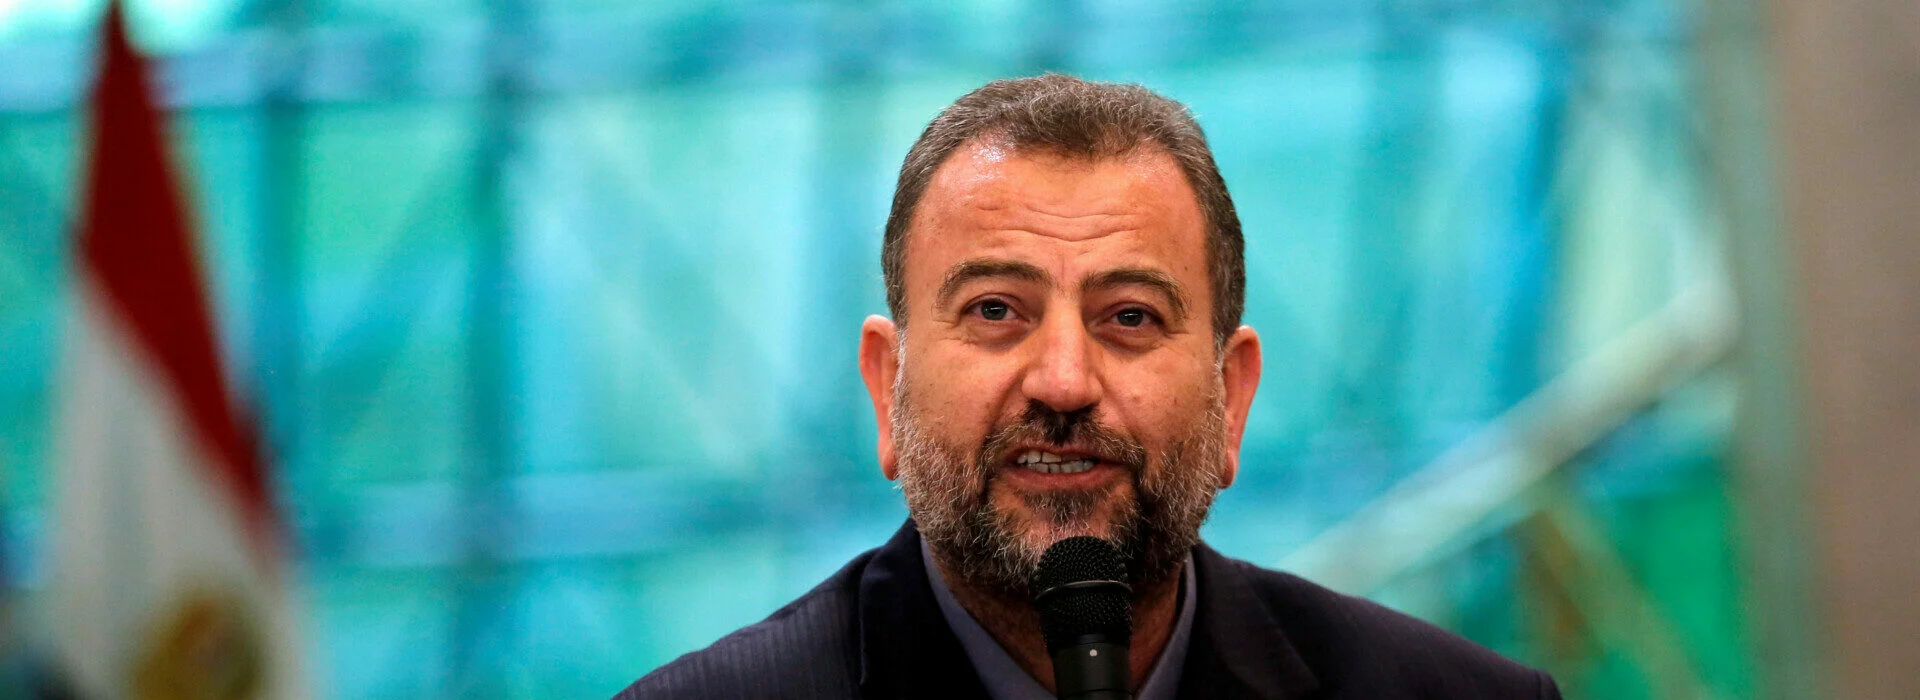 Σαλέχ αλ-Αρούρι: Ποιος ήταν ο υπαρχηγός της Χαμάς που σκοτώθηκε στη Βηρυτό- Ανοίγει νέο μέτωπο;